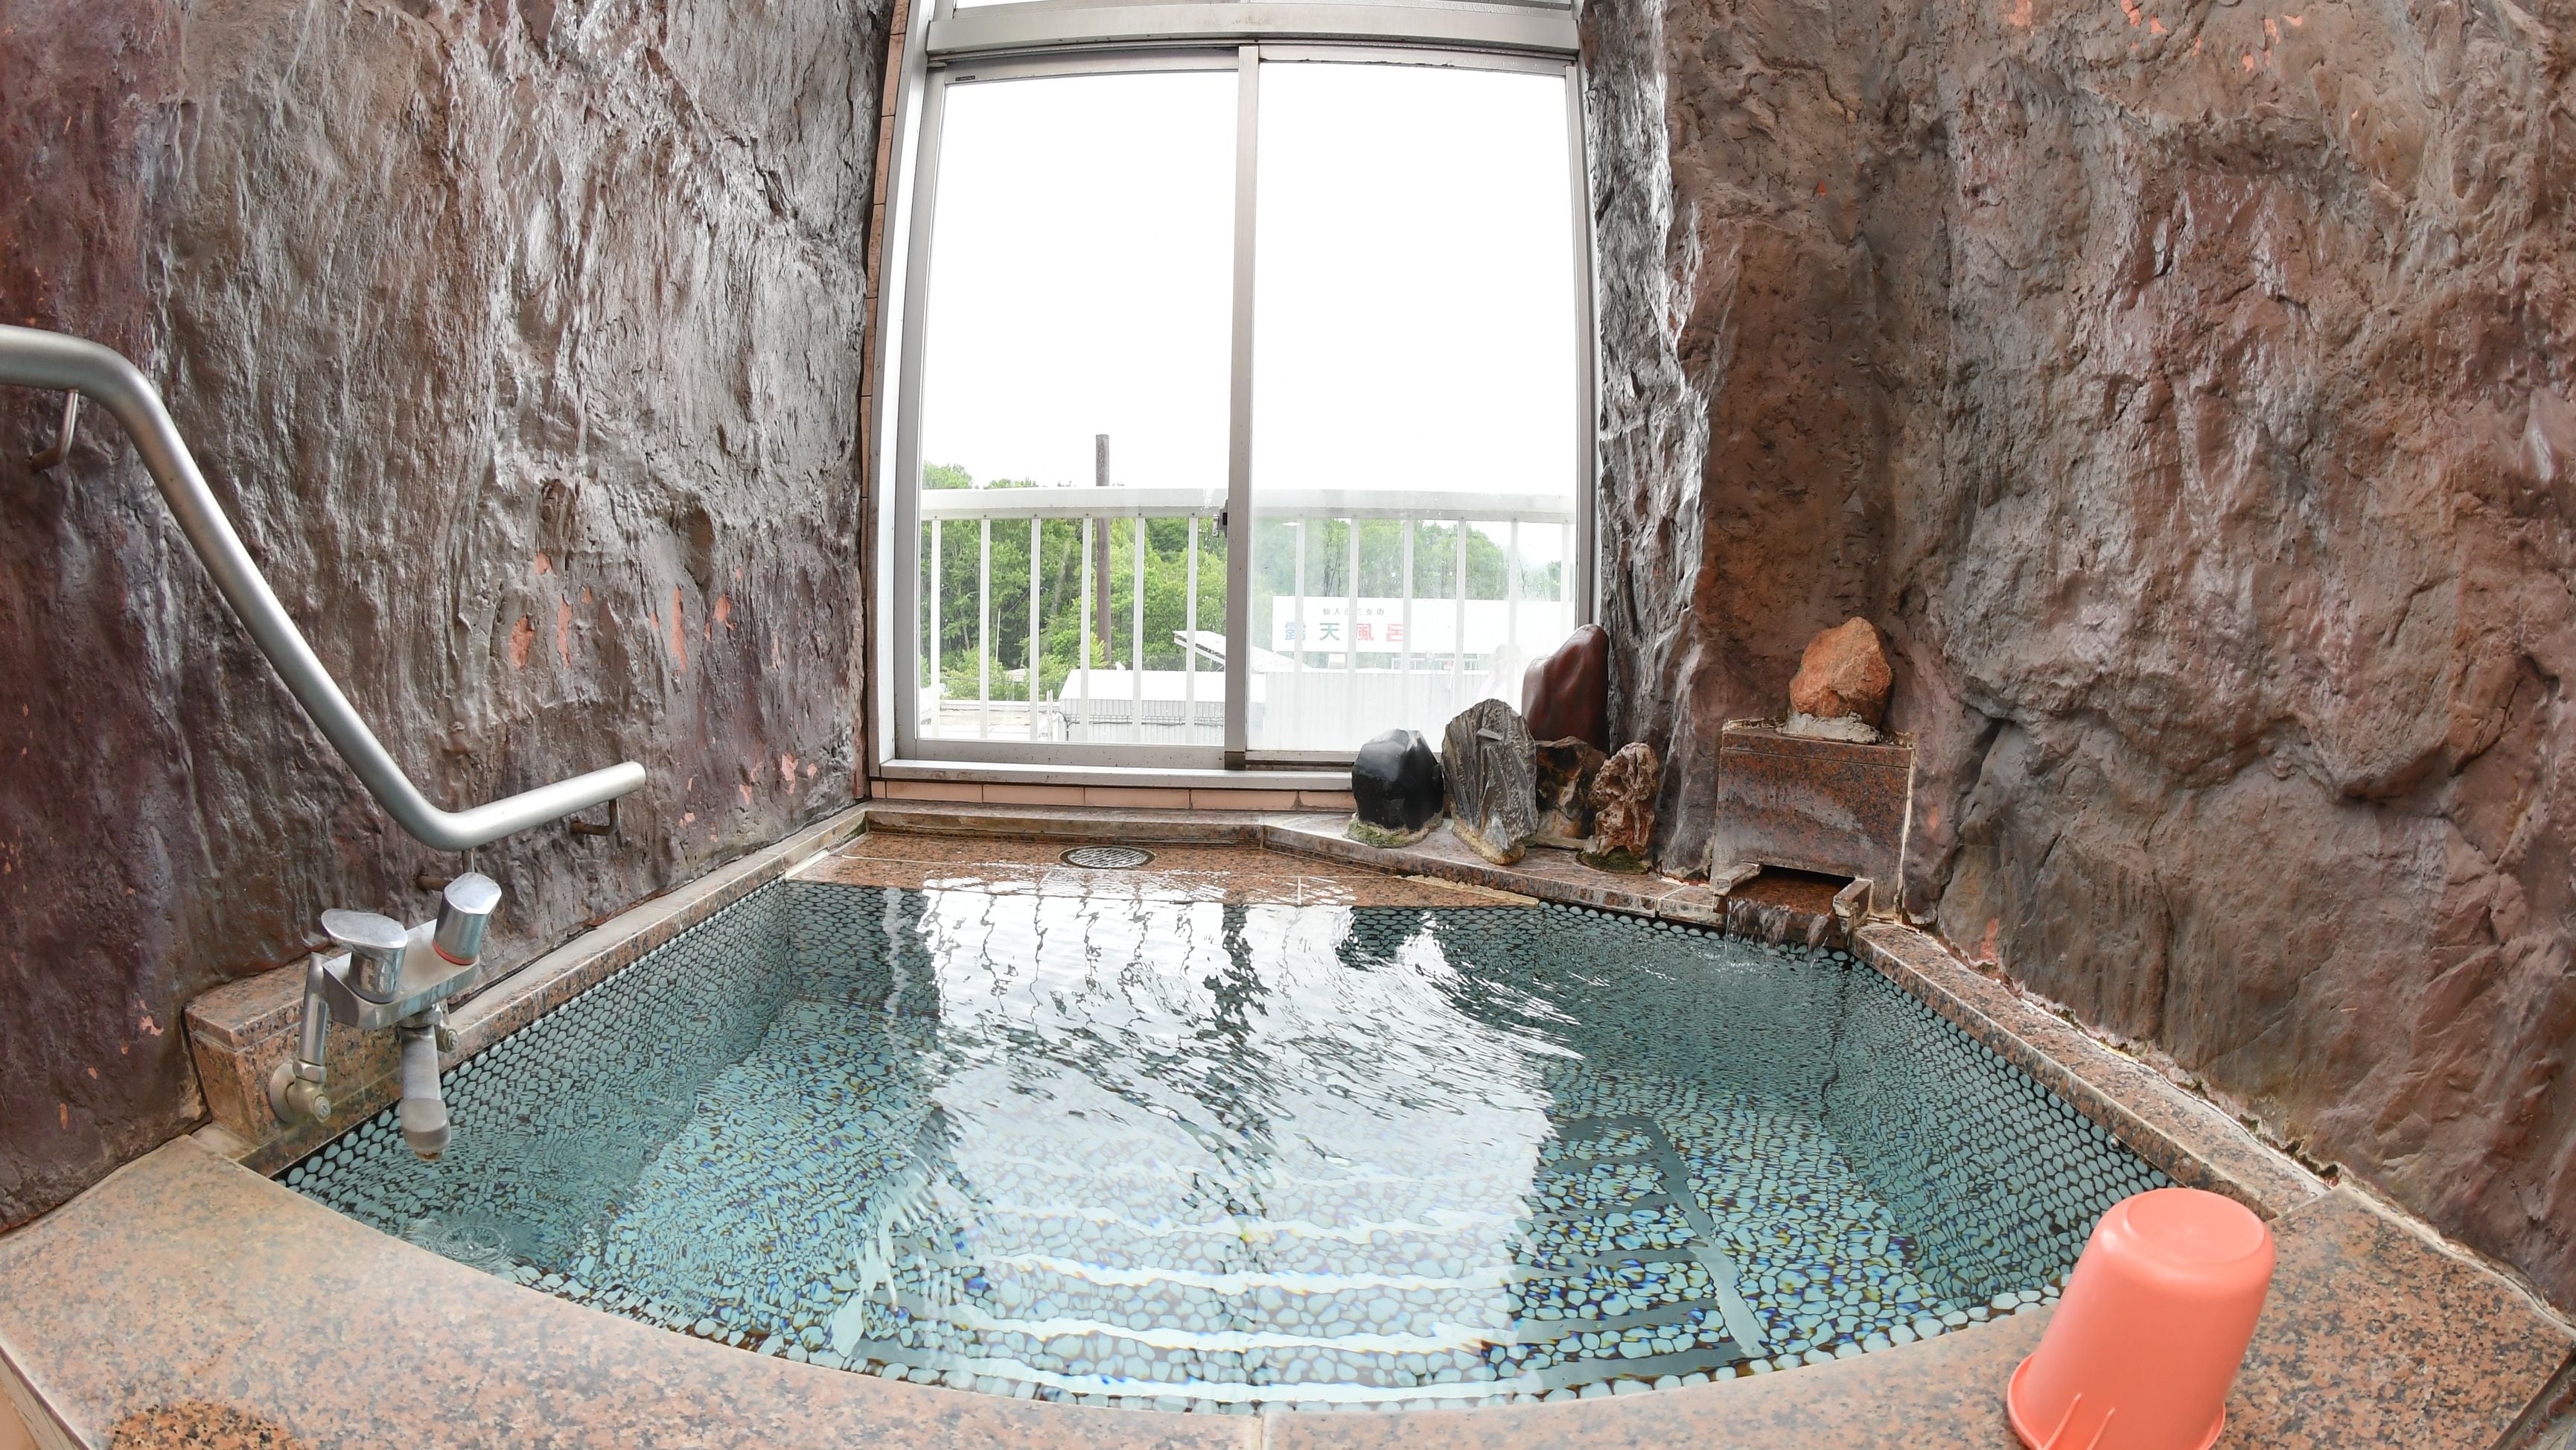 ◆ 帶岩浴的日式房間 浴缸的最佳景觀。岩浴是天然溫泉。